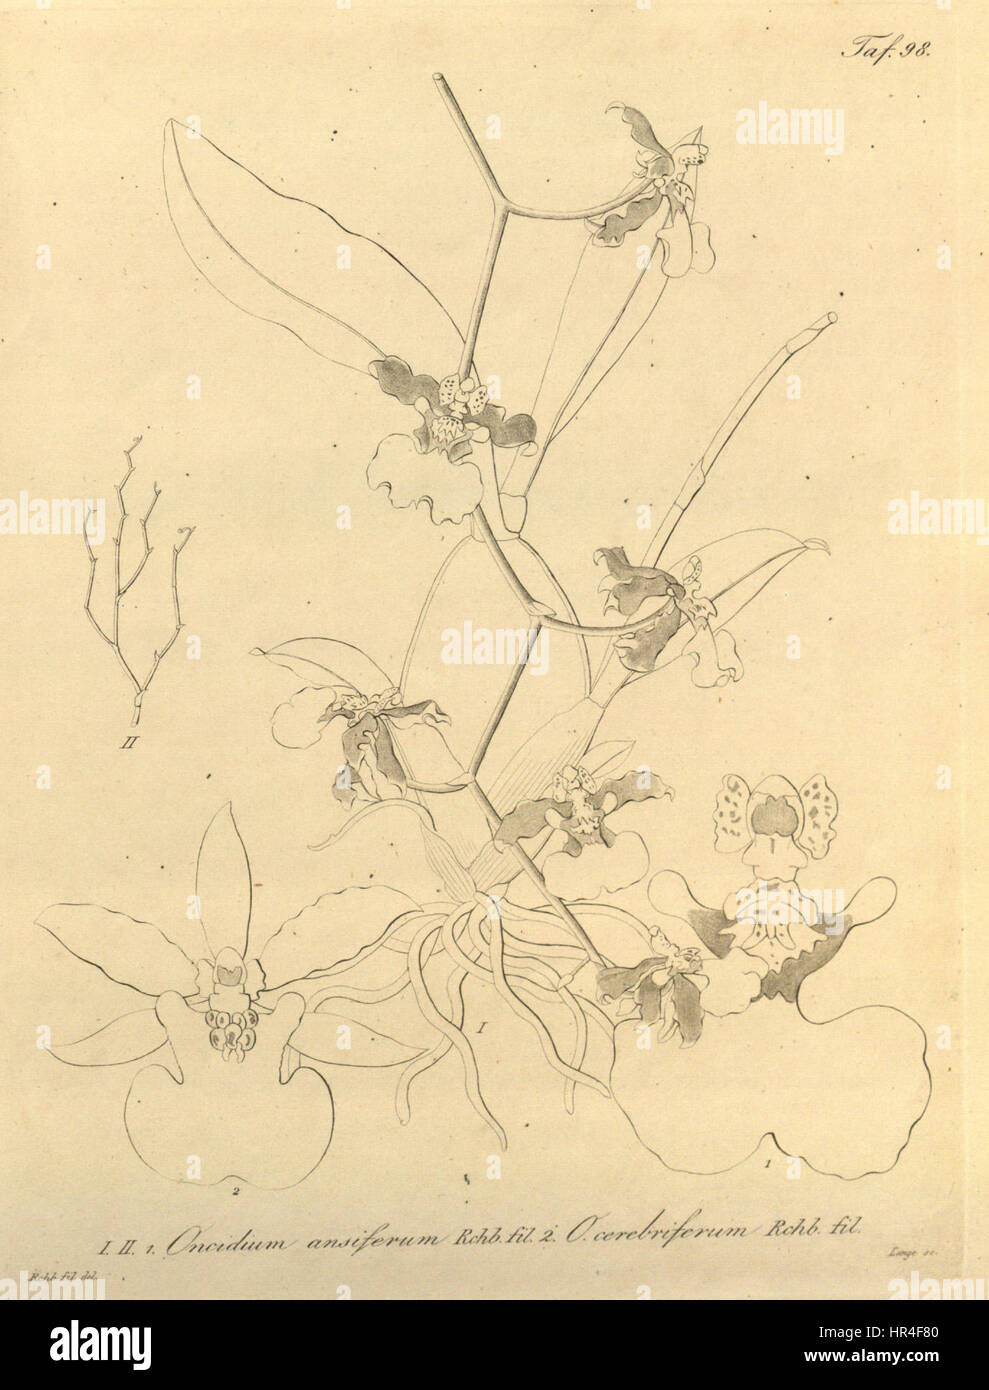 Oncidium ansiferum and Oncidium ensatum (as O. cerebriferum)-Xenia 1-98 (1858) Stock Photo